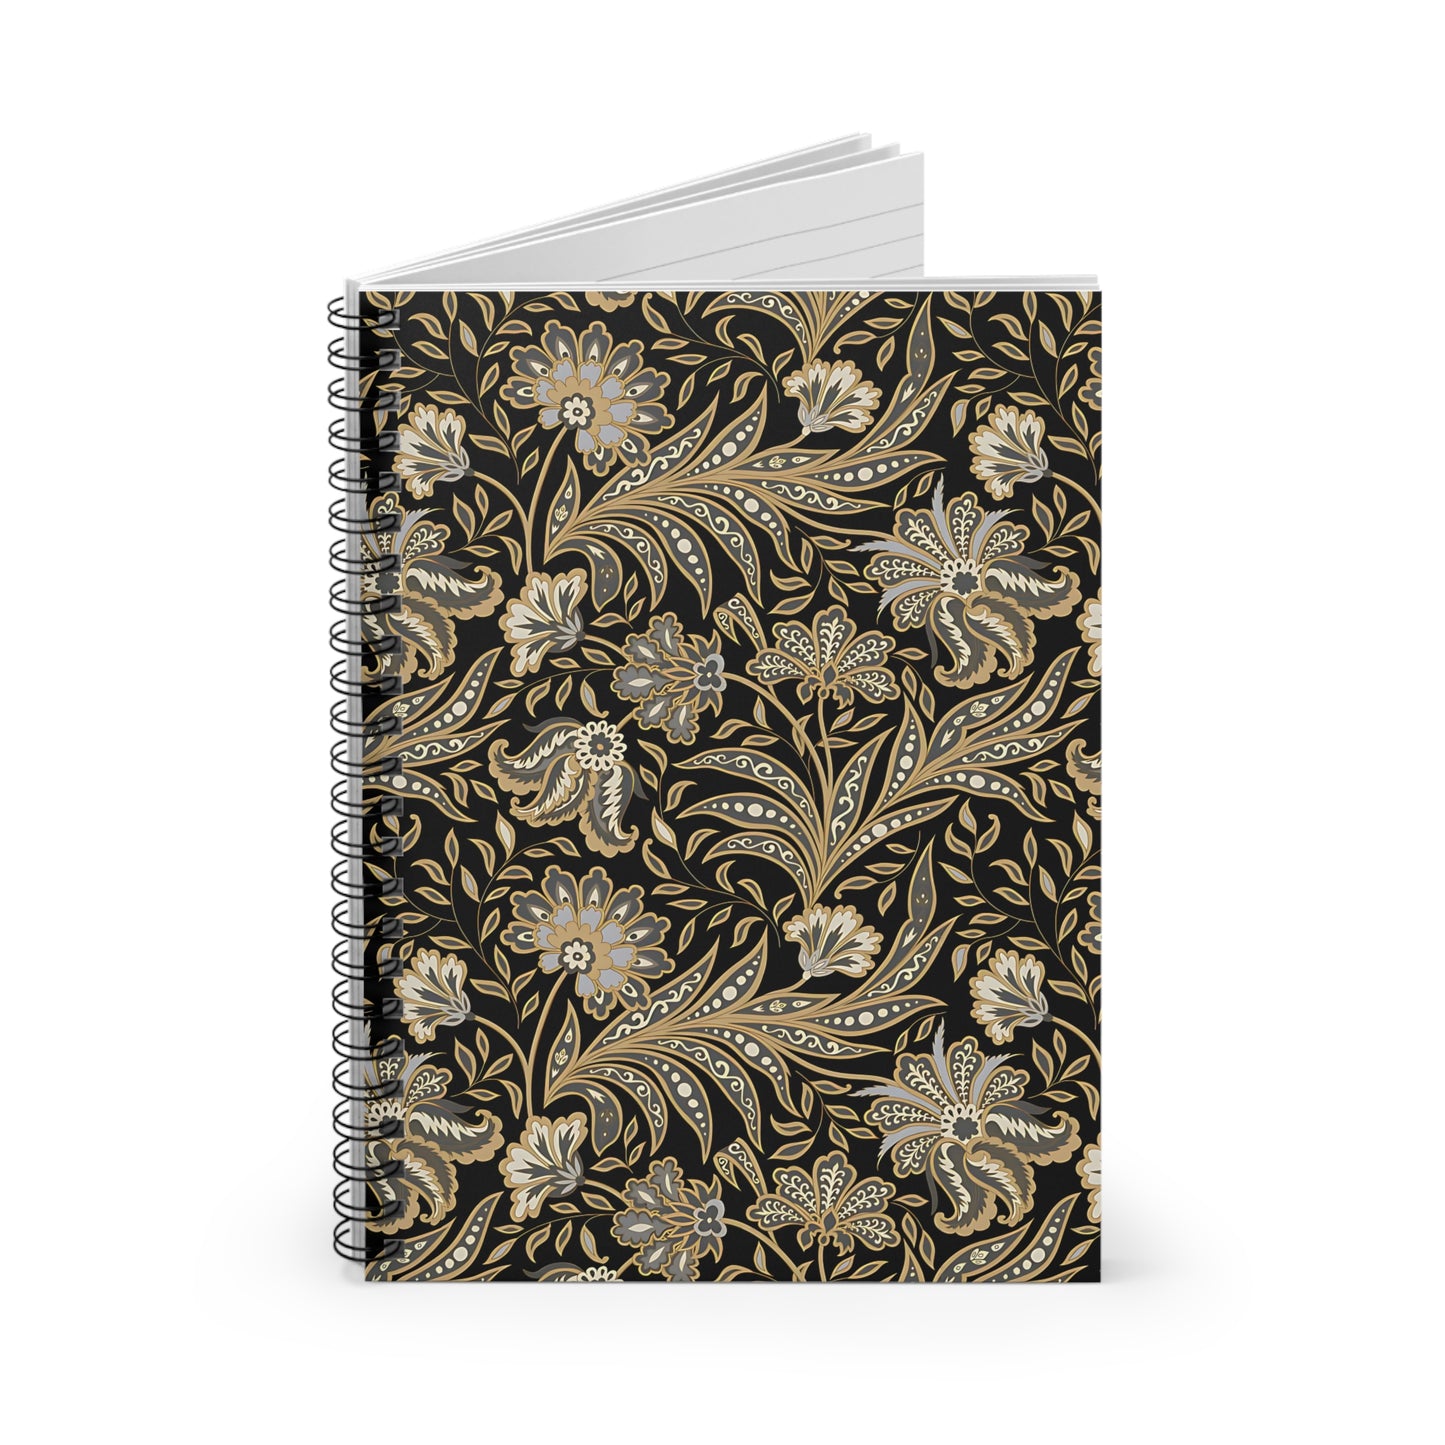 Black & Gold Spiral Notebook - Ruled Line